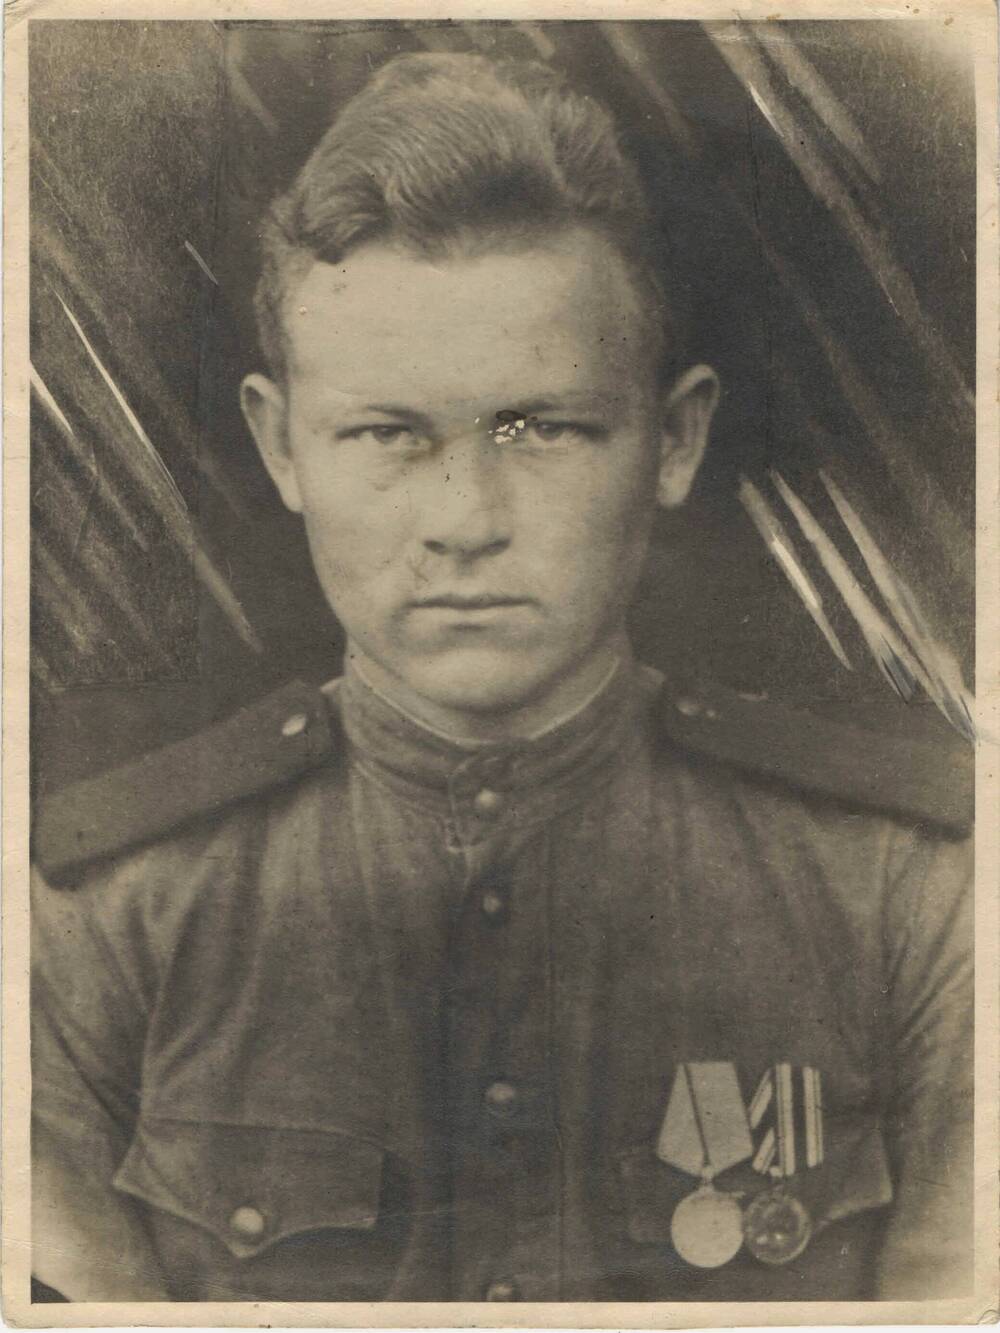 Фото академика Конкини М.И. во время службы в Советской Армии 1943-1944 гг.